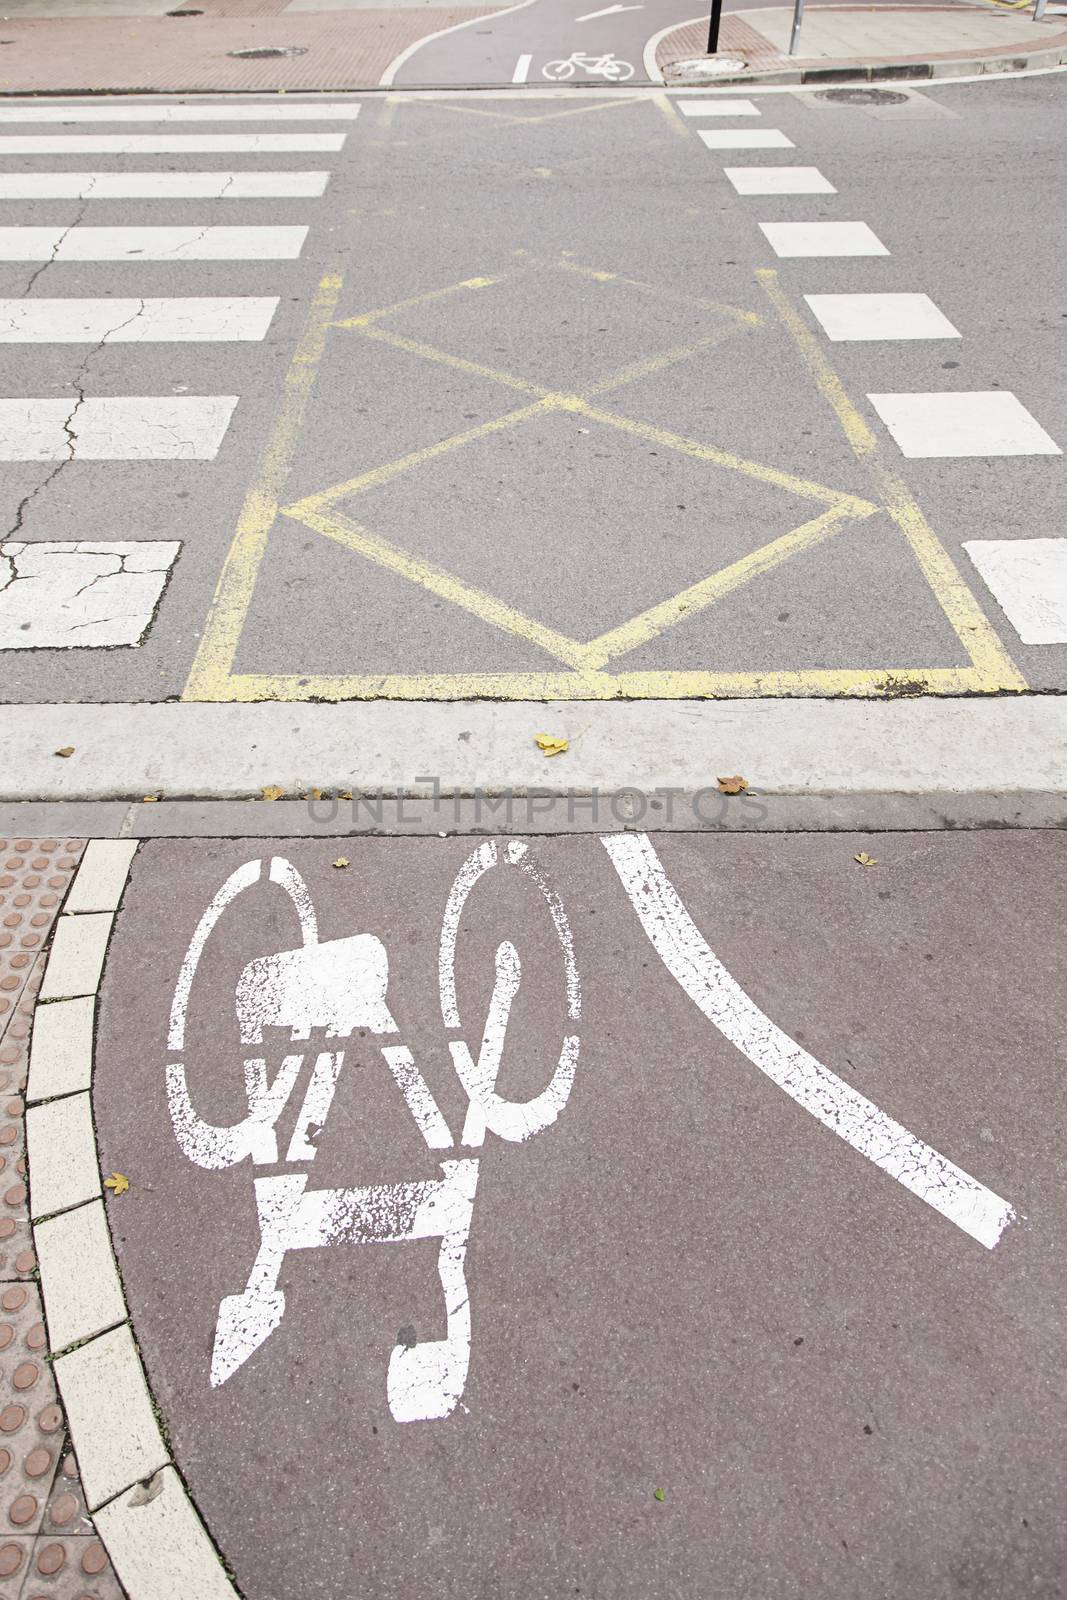 Ride a bike lane, detail signal to travel by bike